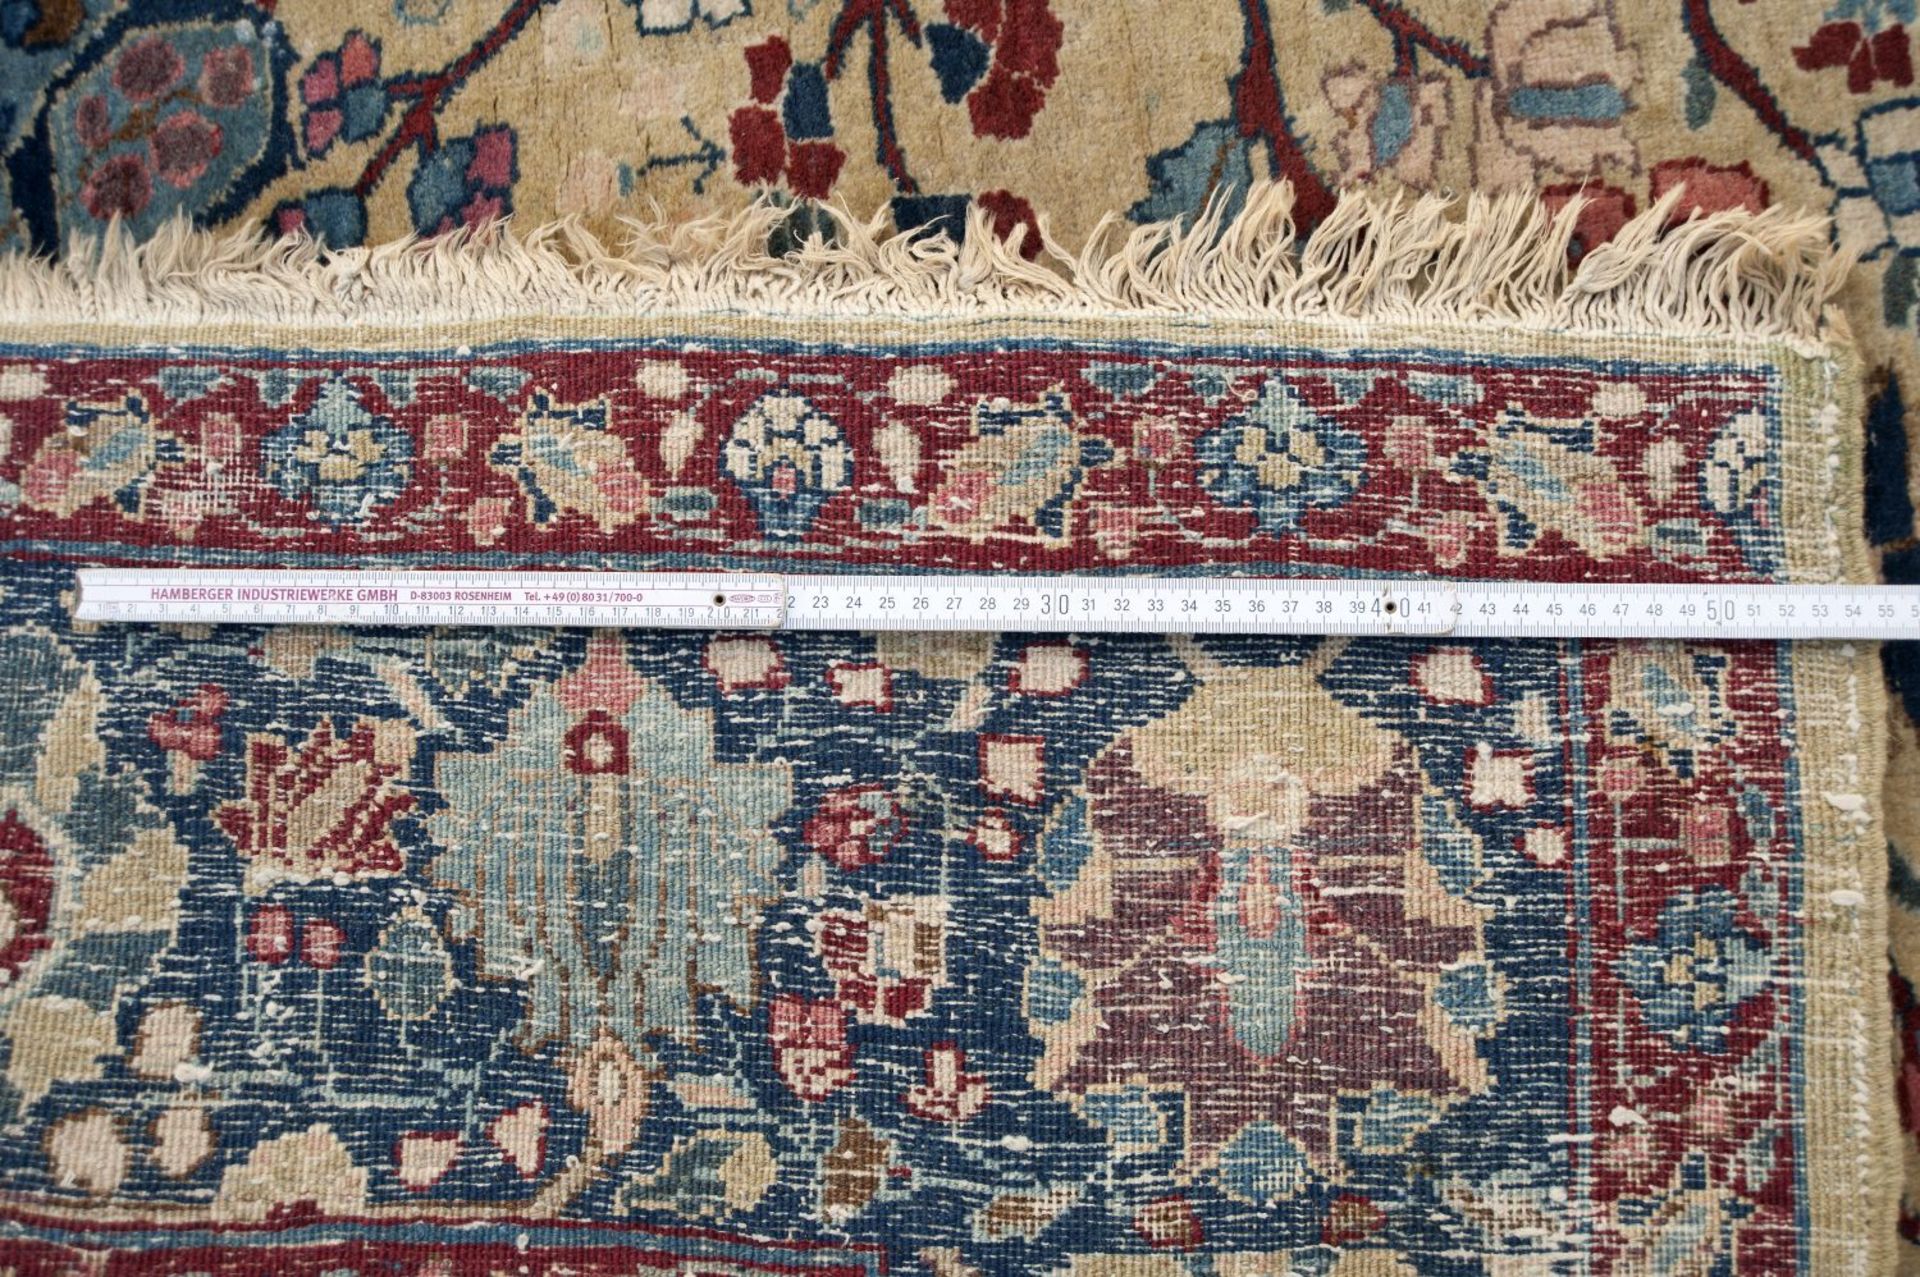 Teppich Beigegrundig. Blatt- und Blütenranken. Zentrales Medaillon. Persien. 365 x 277 cm. Stellenwe - Image 2 of 2